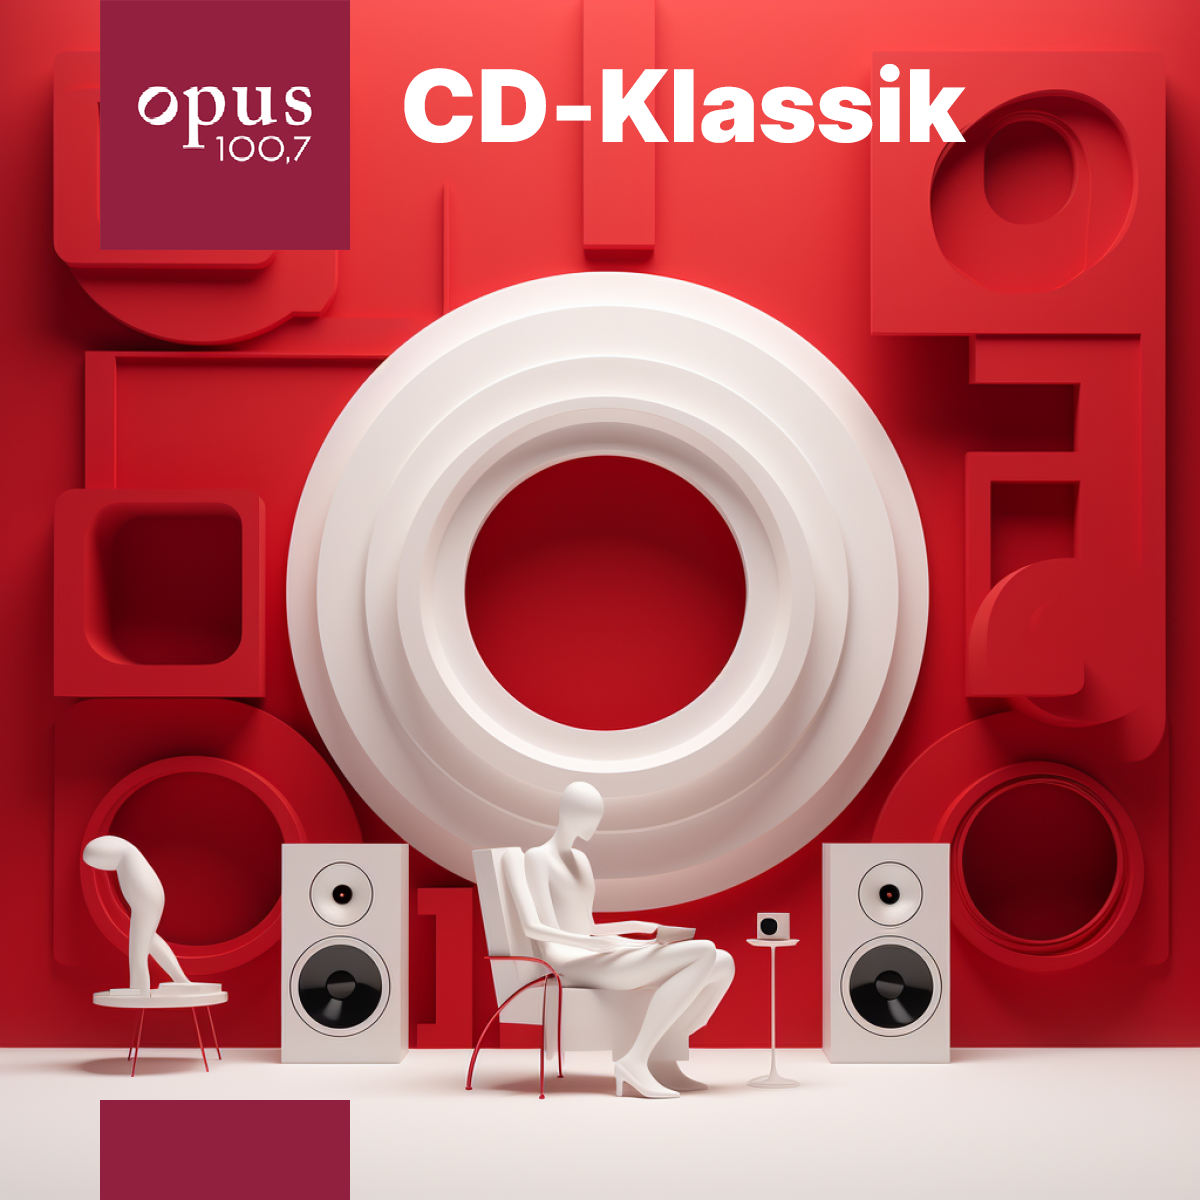 CD-Klassik